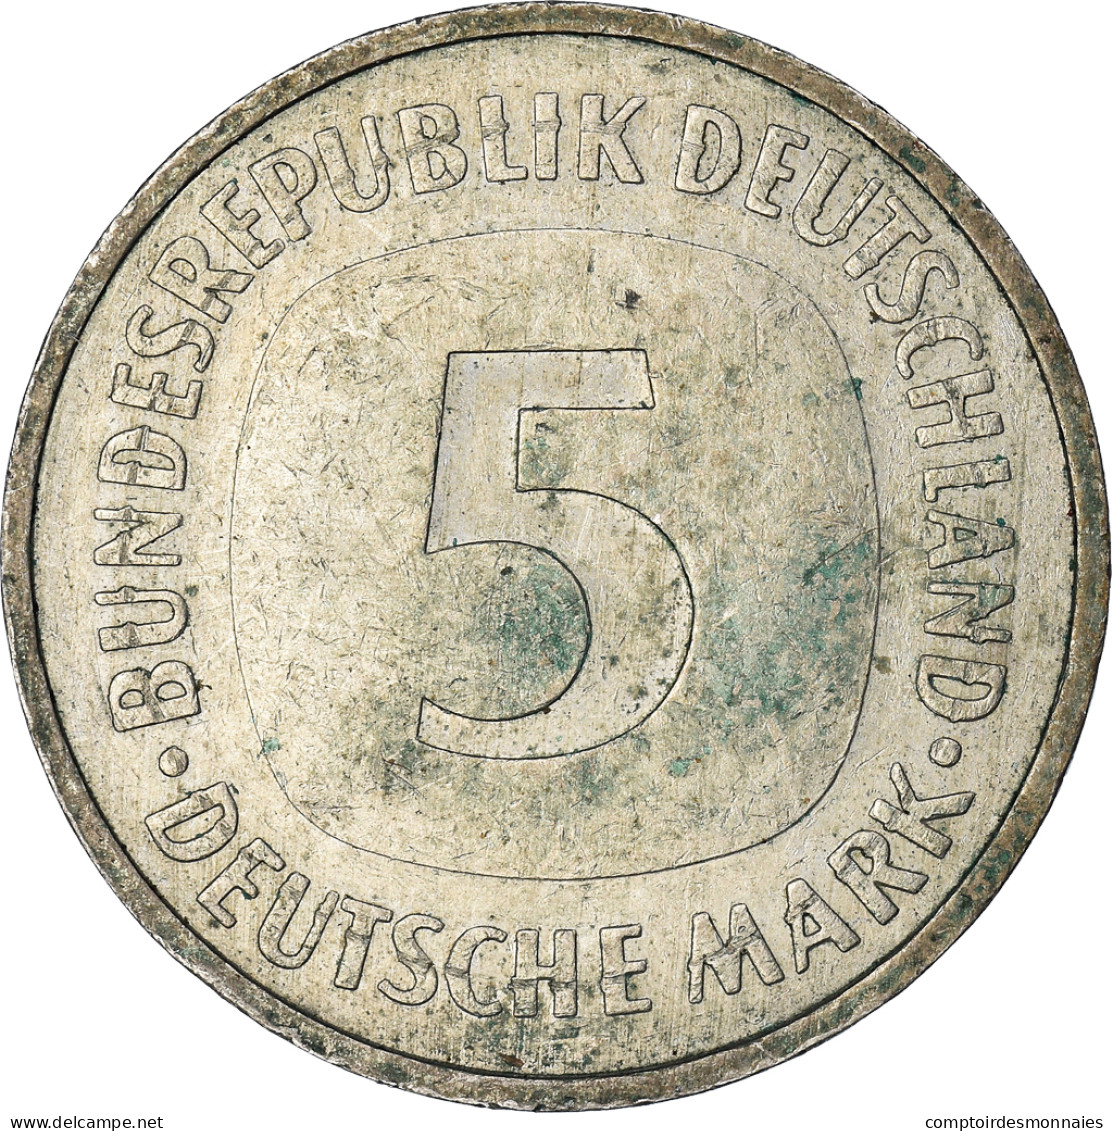 Monnaie, République Fédérale Allemande, 5 Mark, 1990 - 5 Mark